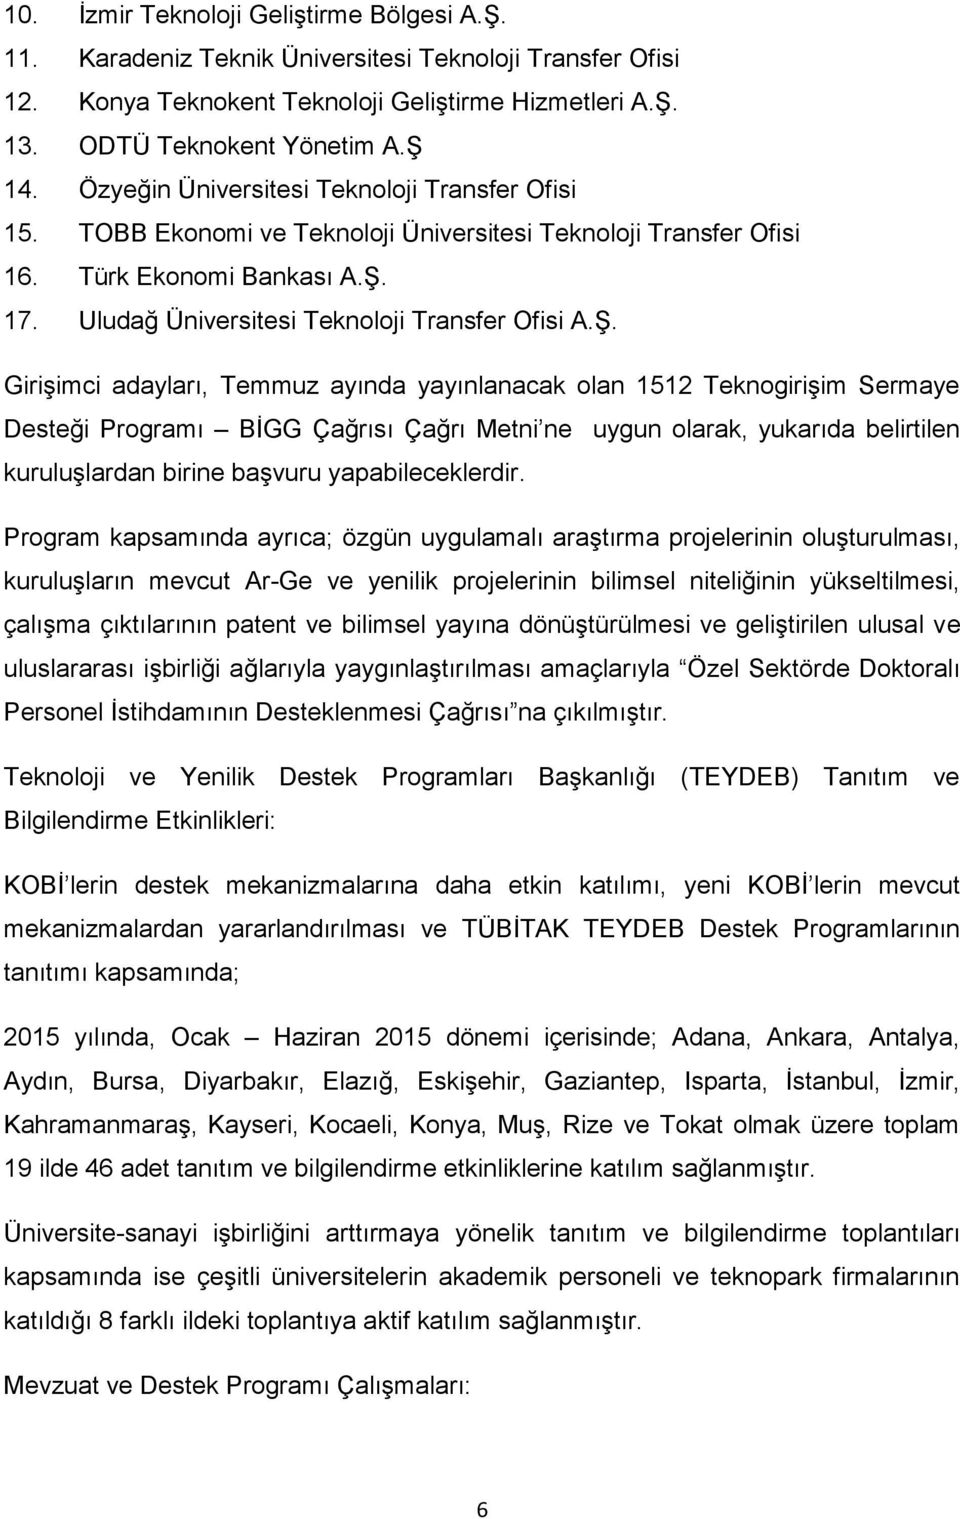 17. Uludağ Üniversitesi Teknoloji Transfer Ofisi A.Ş.